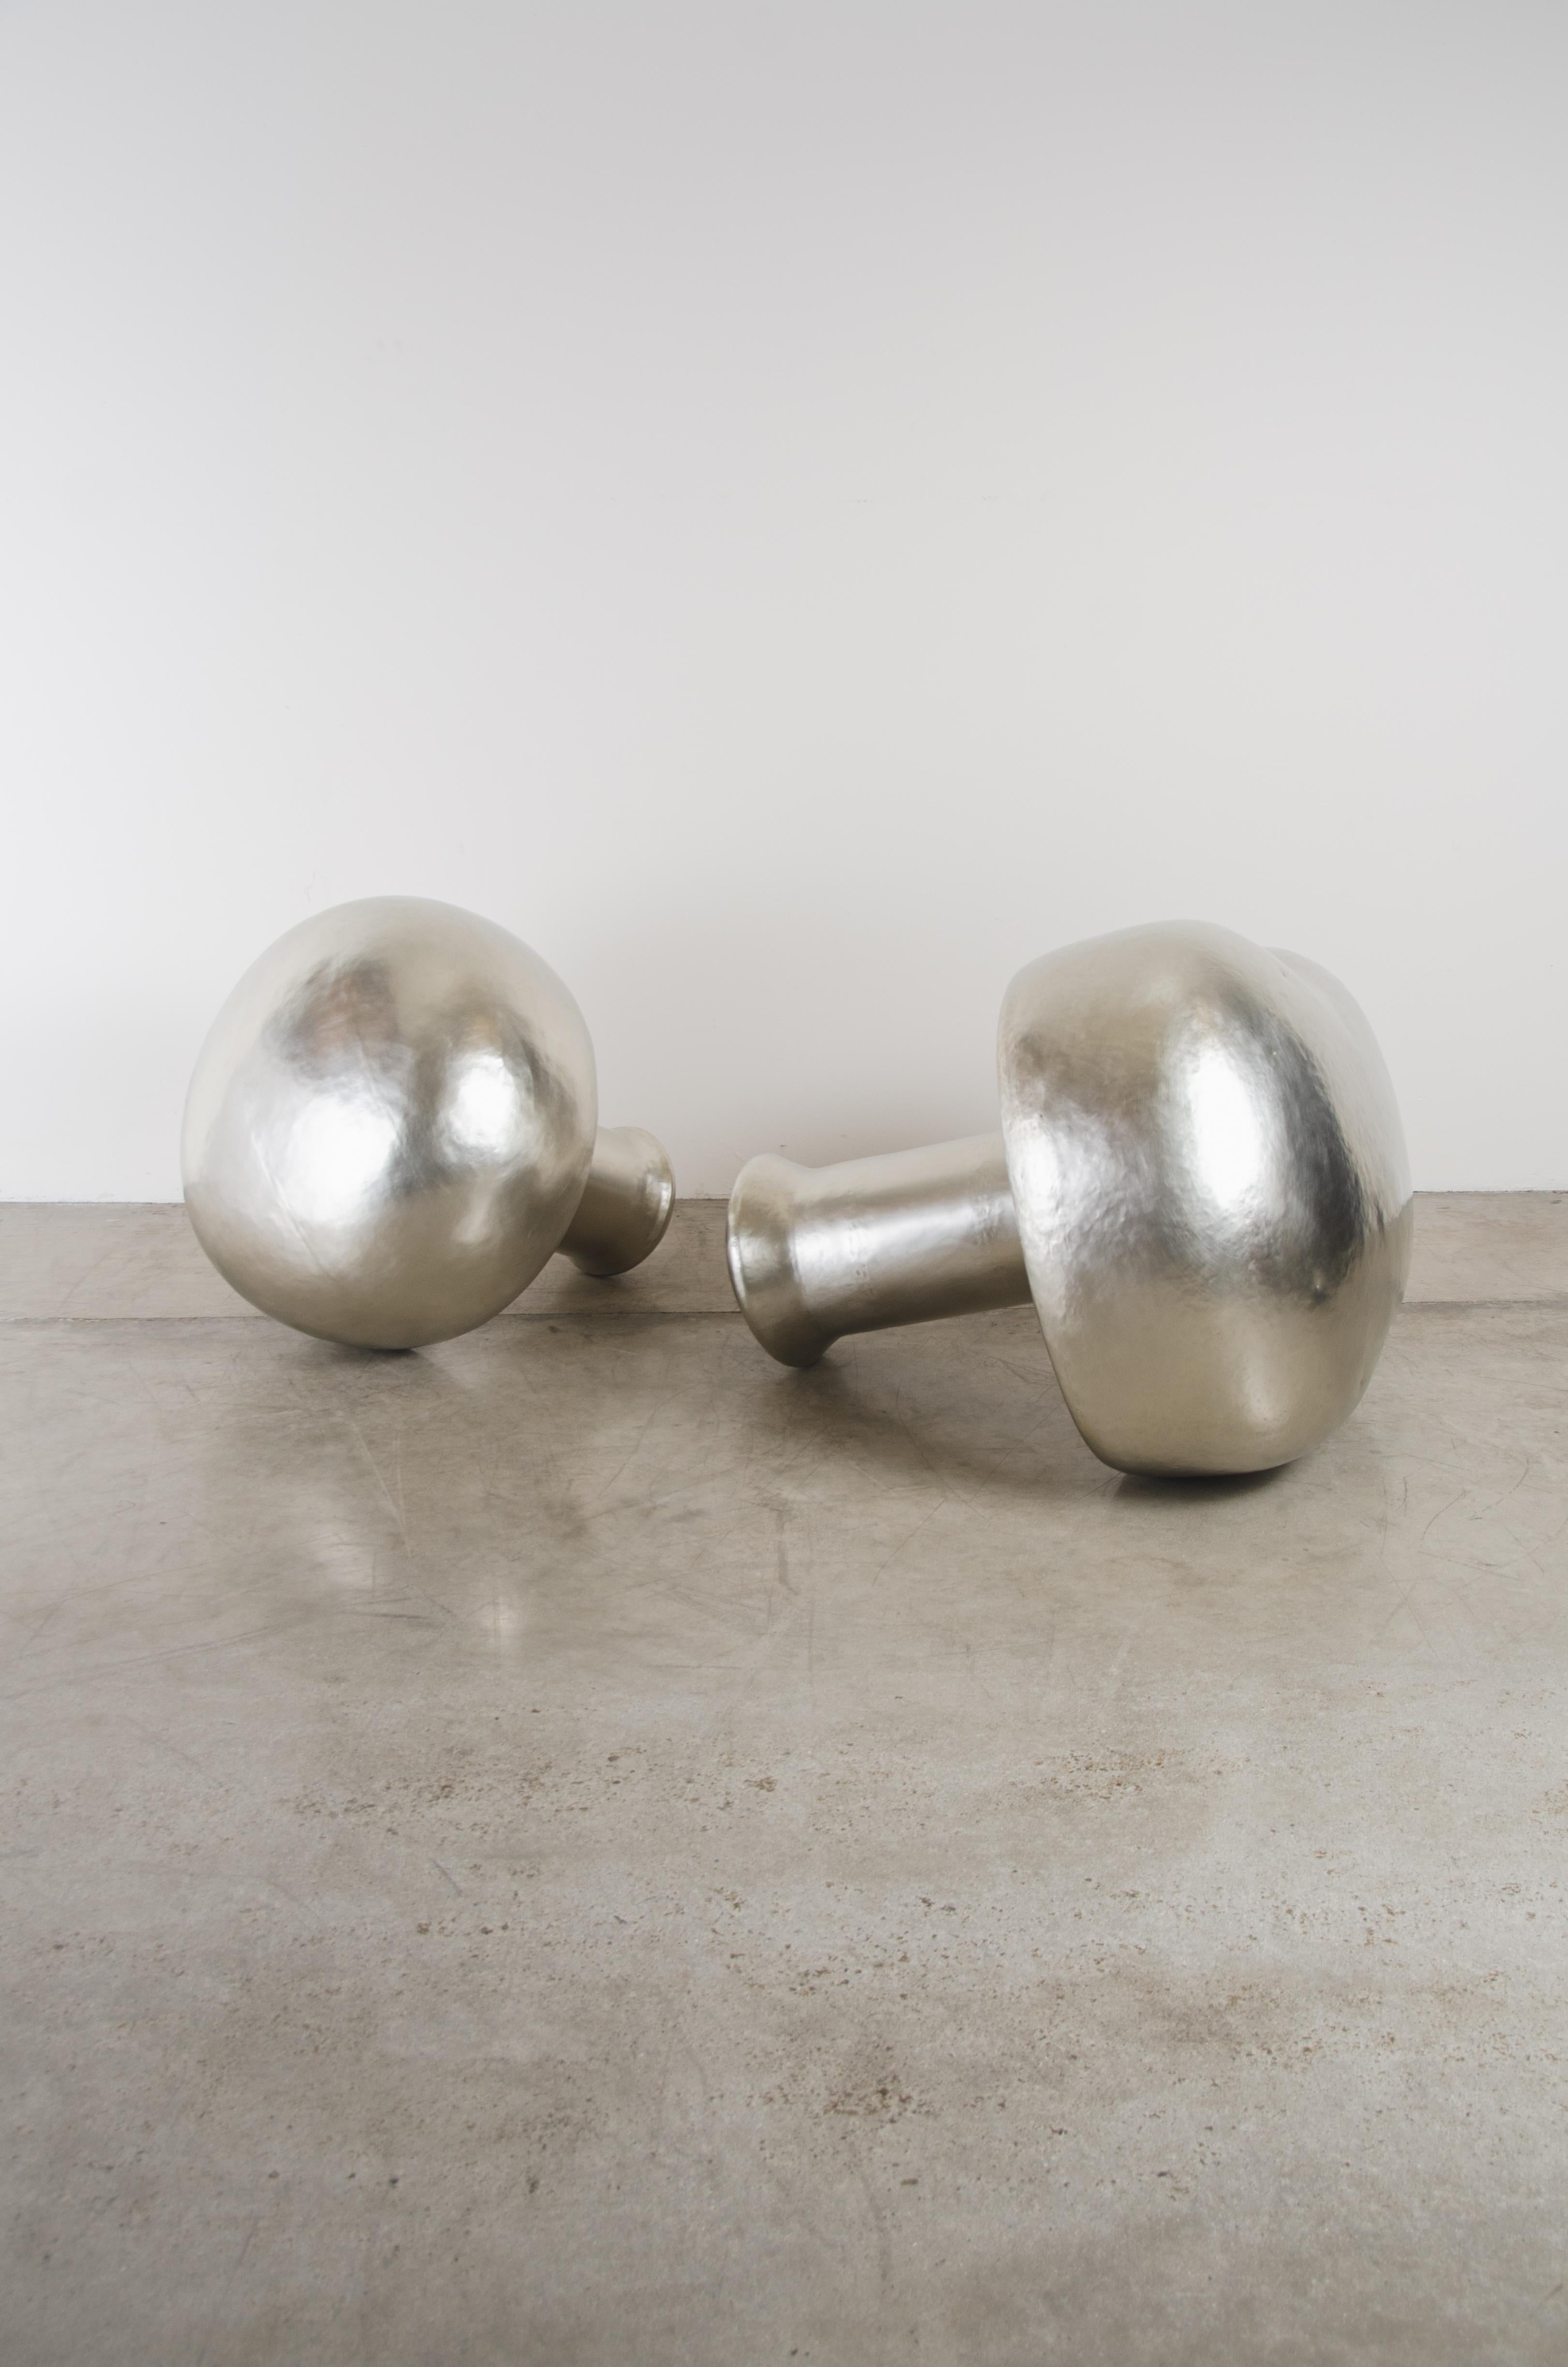 Mushroom sculpture (Set of 2)
White bronze
Hand repoussé
Measures: S: 29 1/2